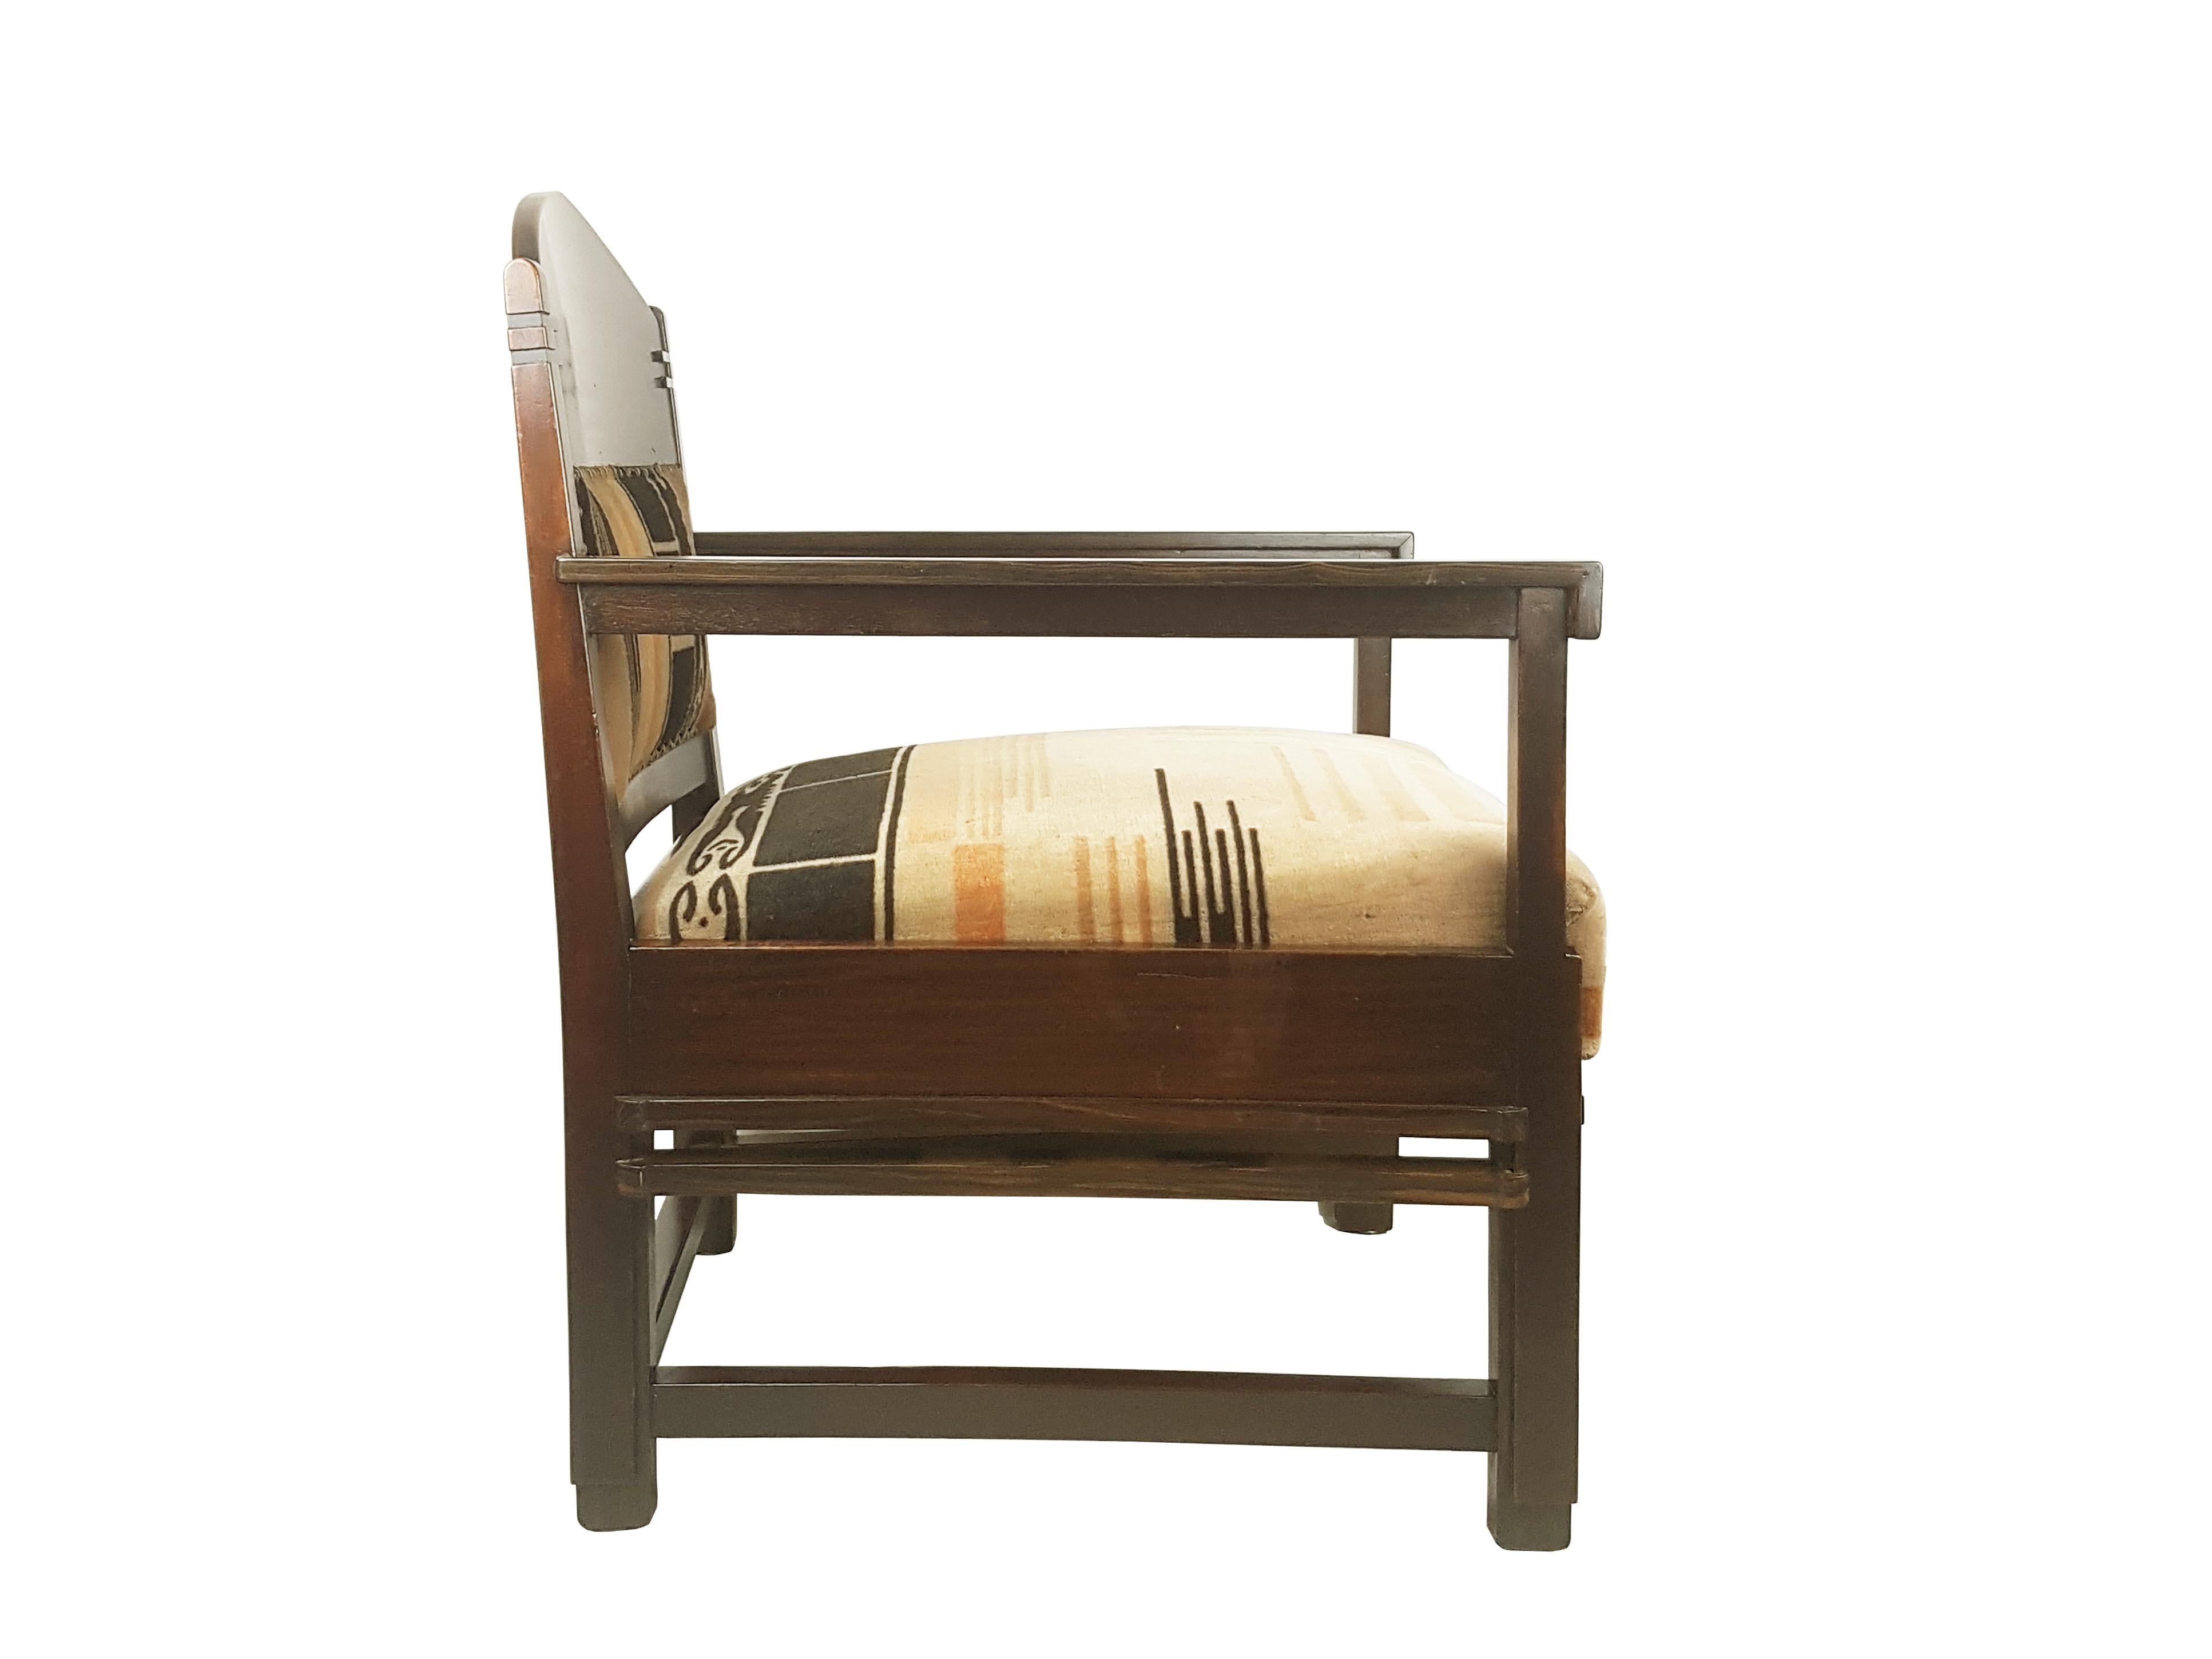 Rare fauteuil art déco fabriqué en Hollande probablement vers les années 1920 et attribué à l'architecte C. Bartels, de l'école d'Amsterdam. Structure en bois avec assise et dossier rembourrés. Le velours est authentique et présente un beau décor